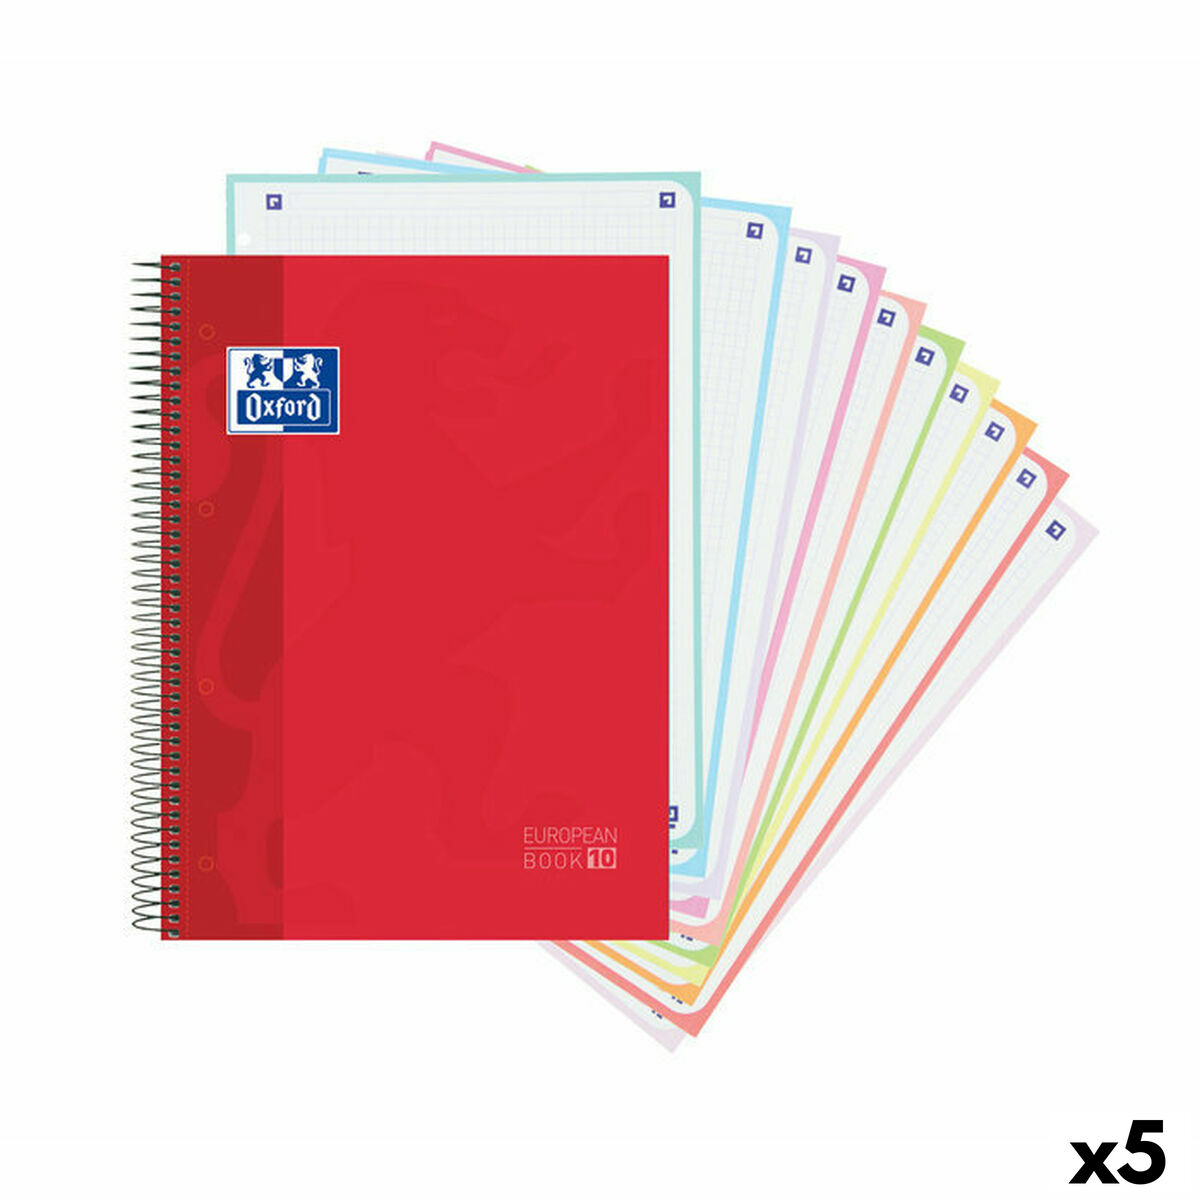 Cahier Oxford Europeanbook 10 School Classic Rouge A4 150 Volets (5 Unités)